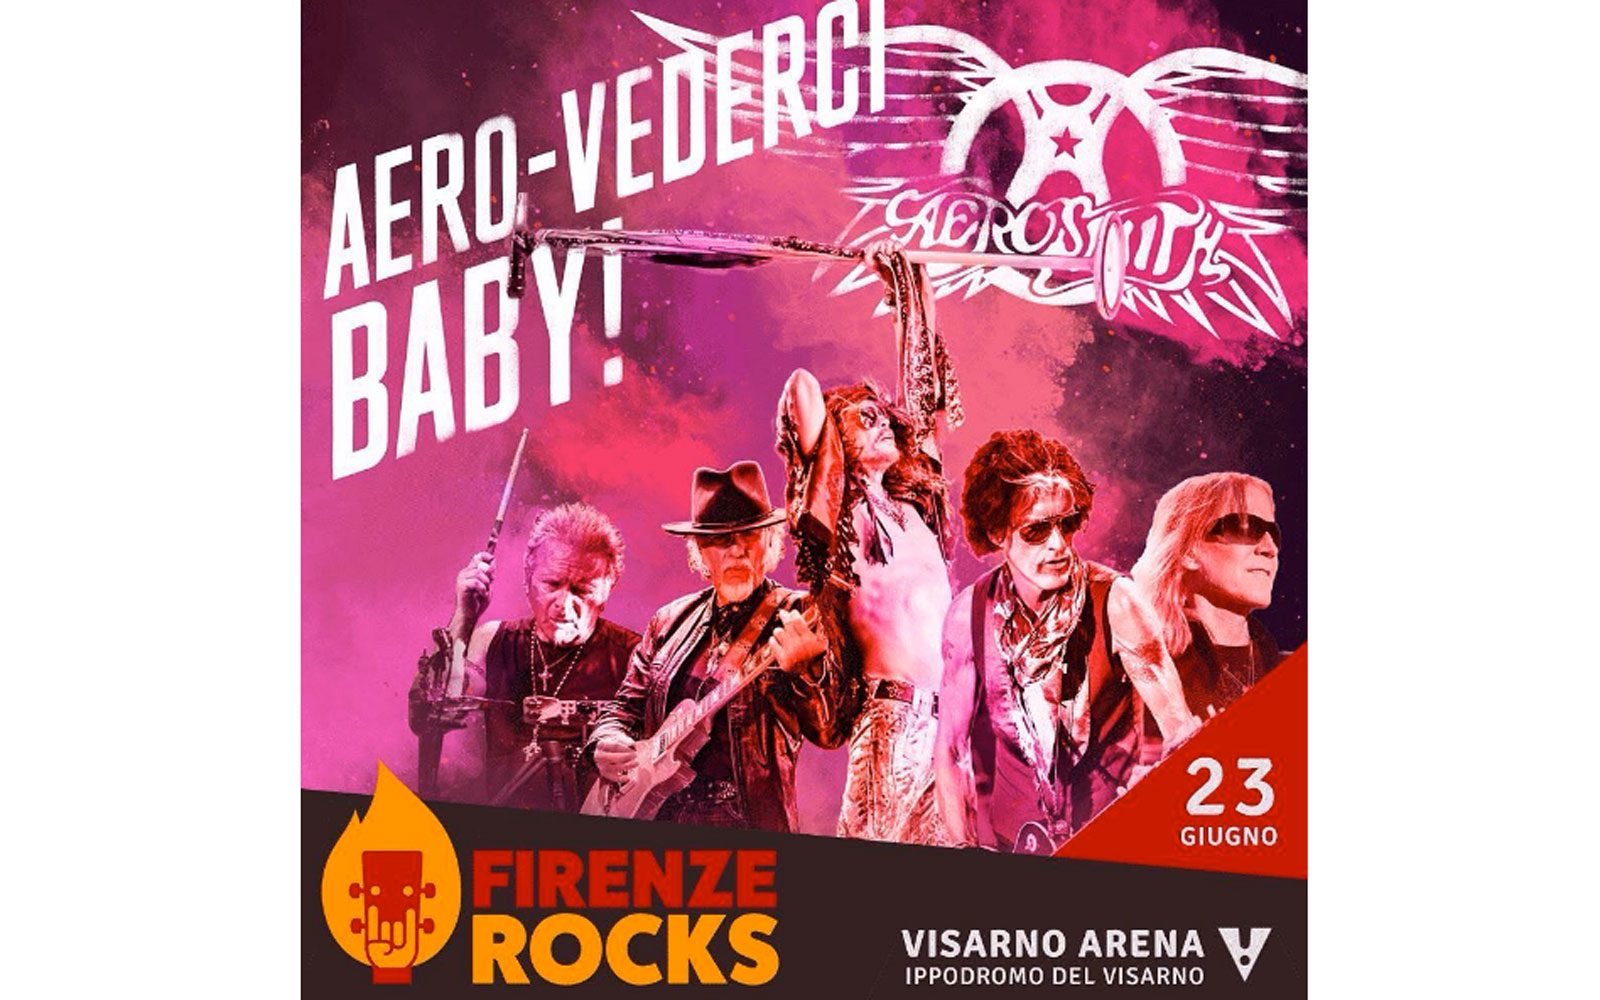 Gli Aerosmith si esibiranno al Firenze Rocks il 23 Giugno